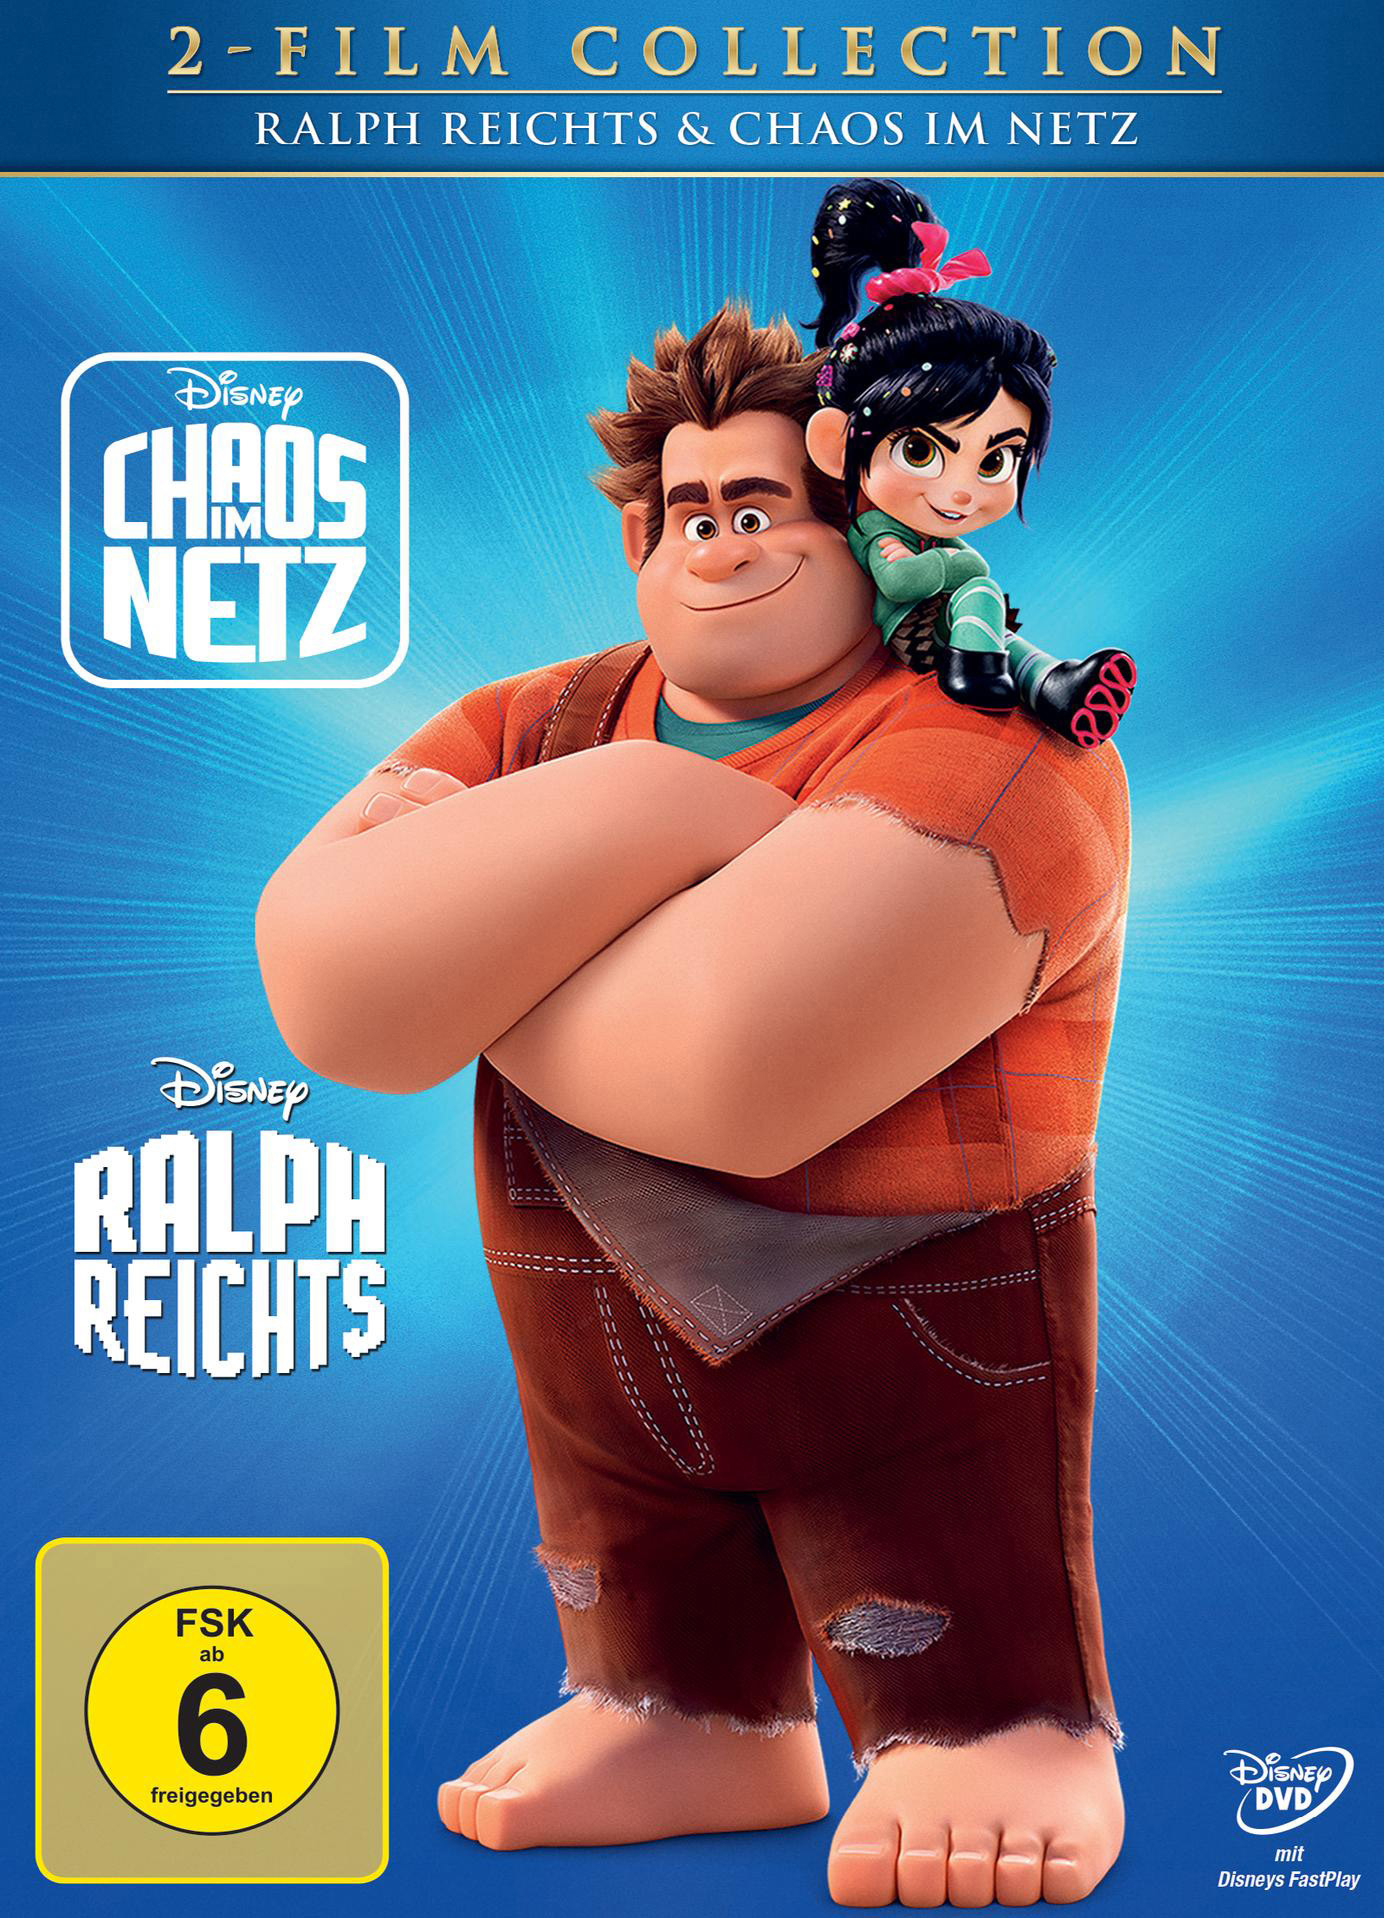 Ralph Classics Doppelpack) Chaos Netz + im DVD (Disney reichts